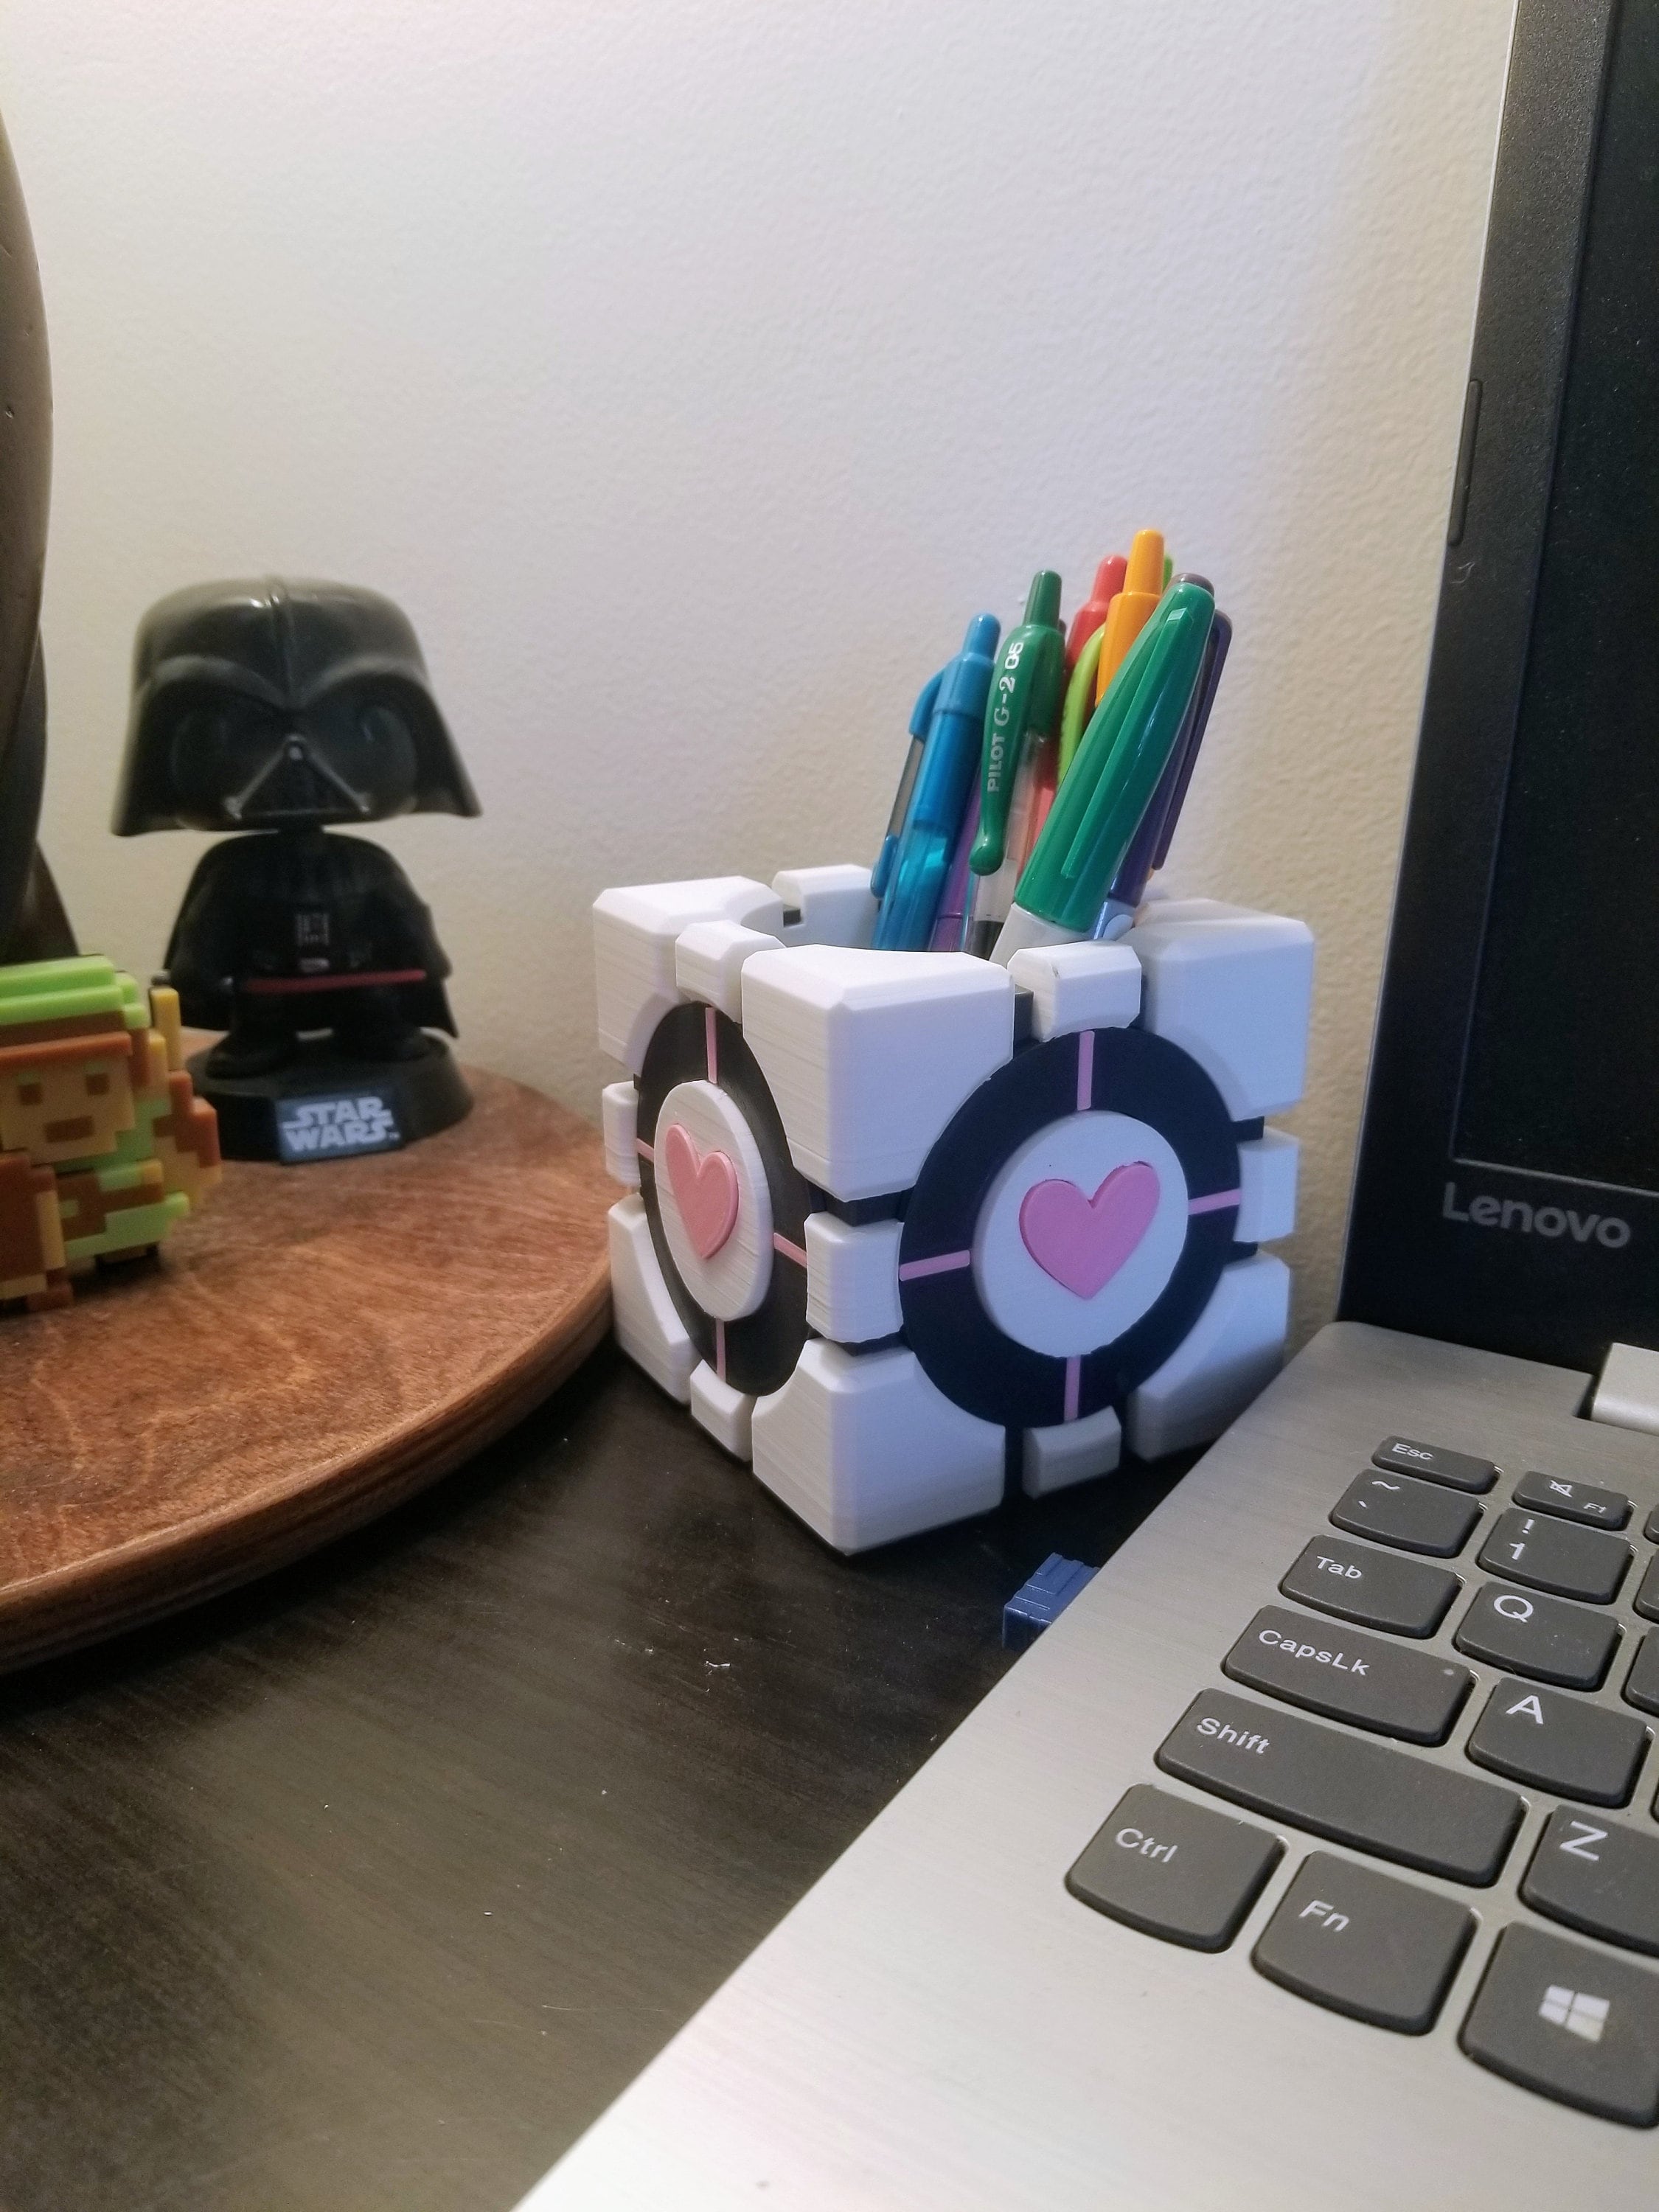 Portal Companion Cube Gift Box